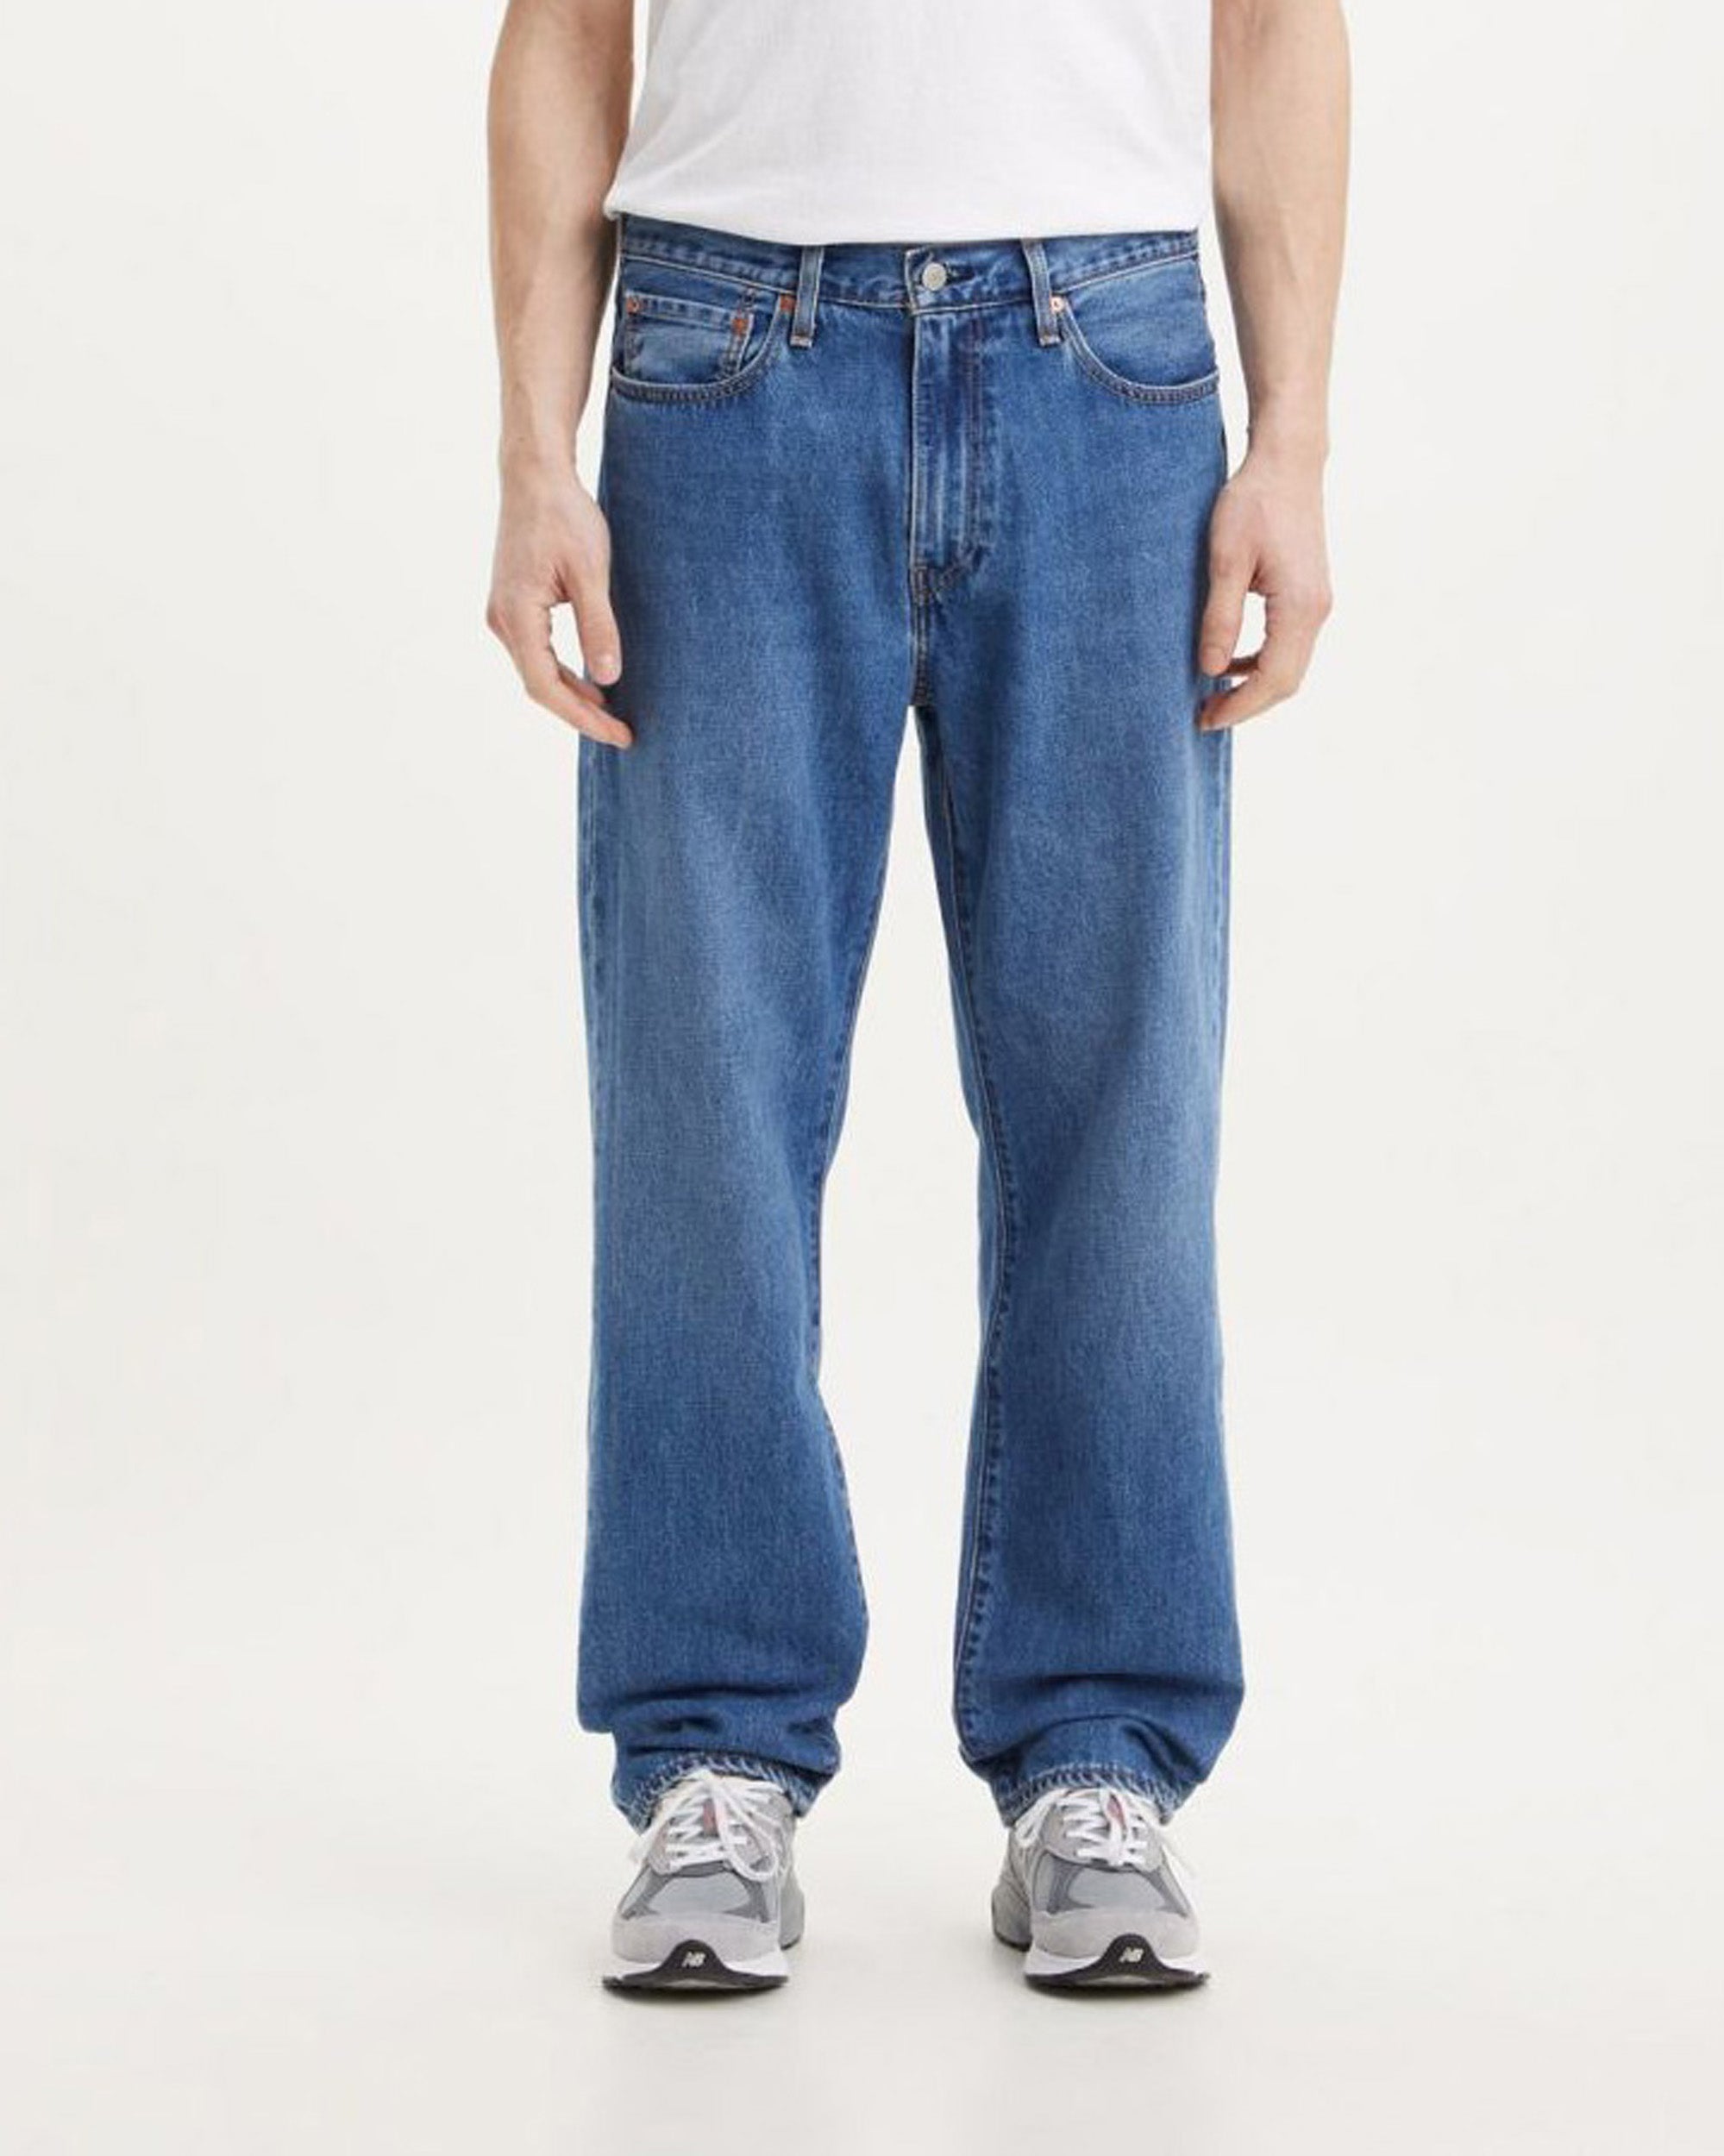 Actualizar 51+ imagen levi's baggy jeans mens - Abzlocal.mx